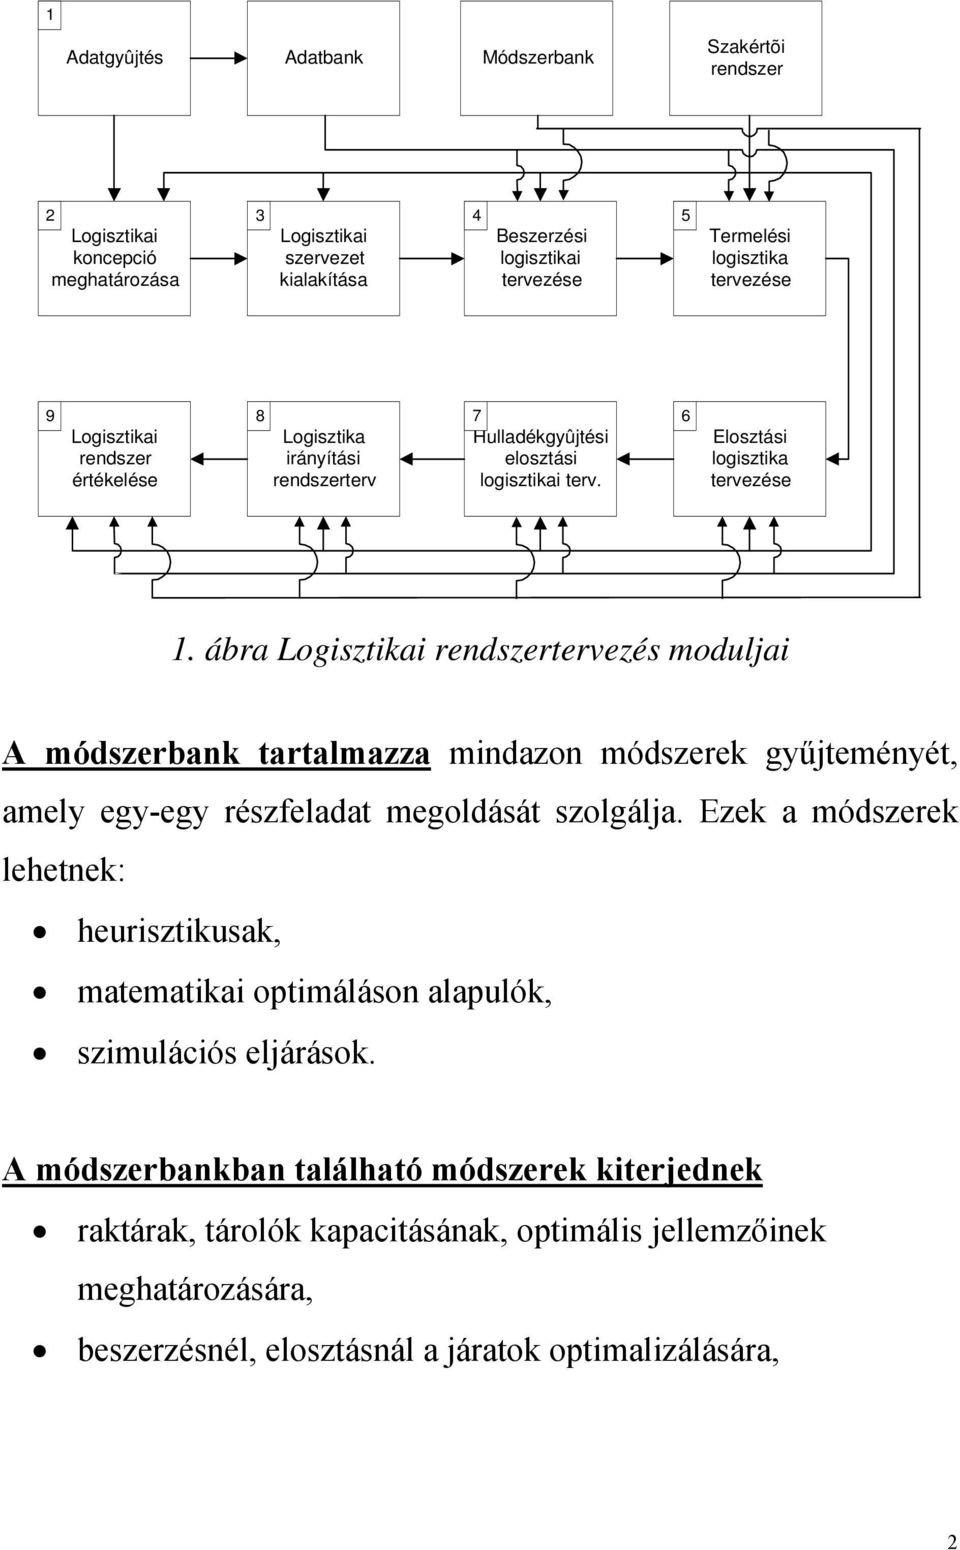 ábra Logisztikai rendszertervezés moduljai A módszerbank tartalmazza mindazon módszerek gyűjteményét, amely egy-egy részfeladat megoldását szolgálja.